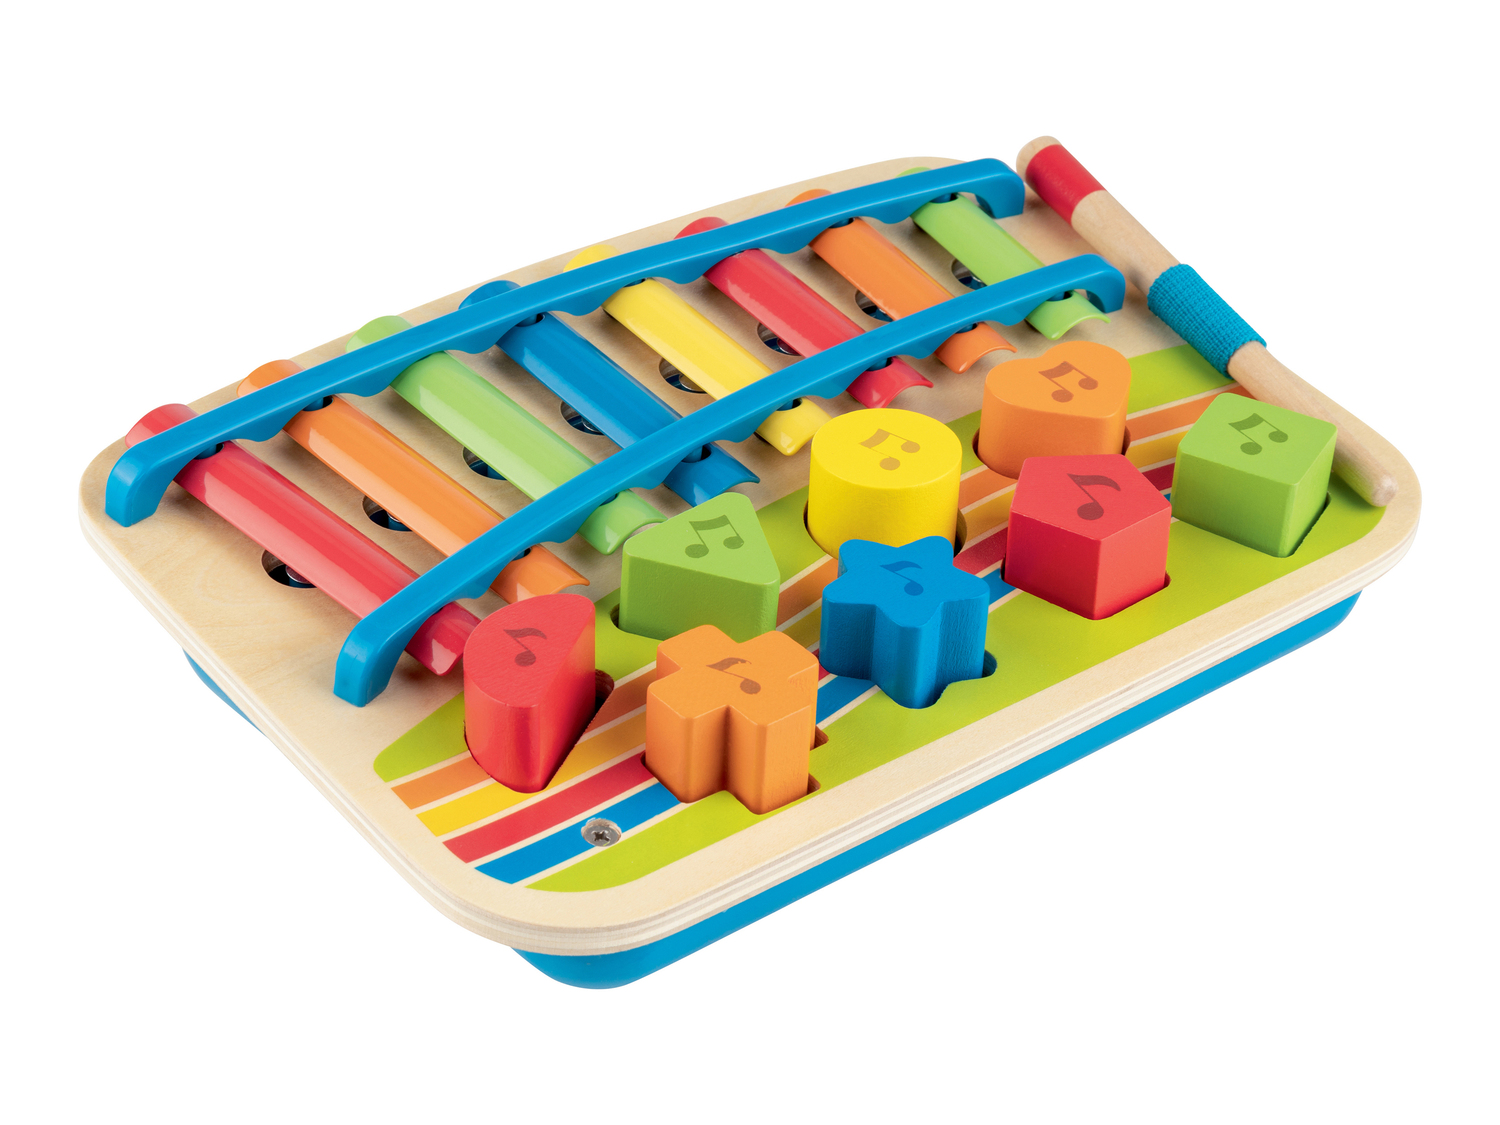 Set strumenti musicali per bambini Playtive, prezzo 11.99 &#8364; 

Caratteristiche

- ...